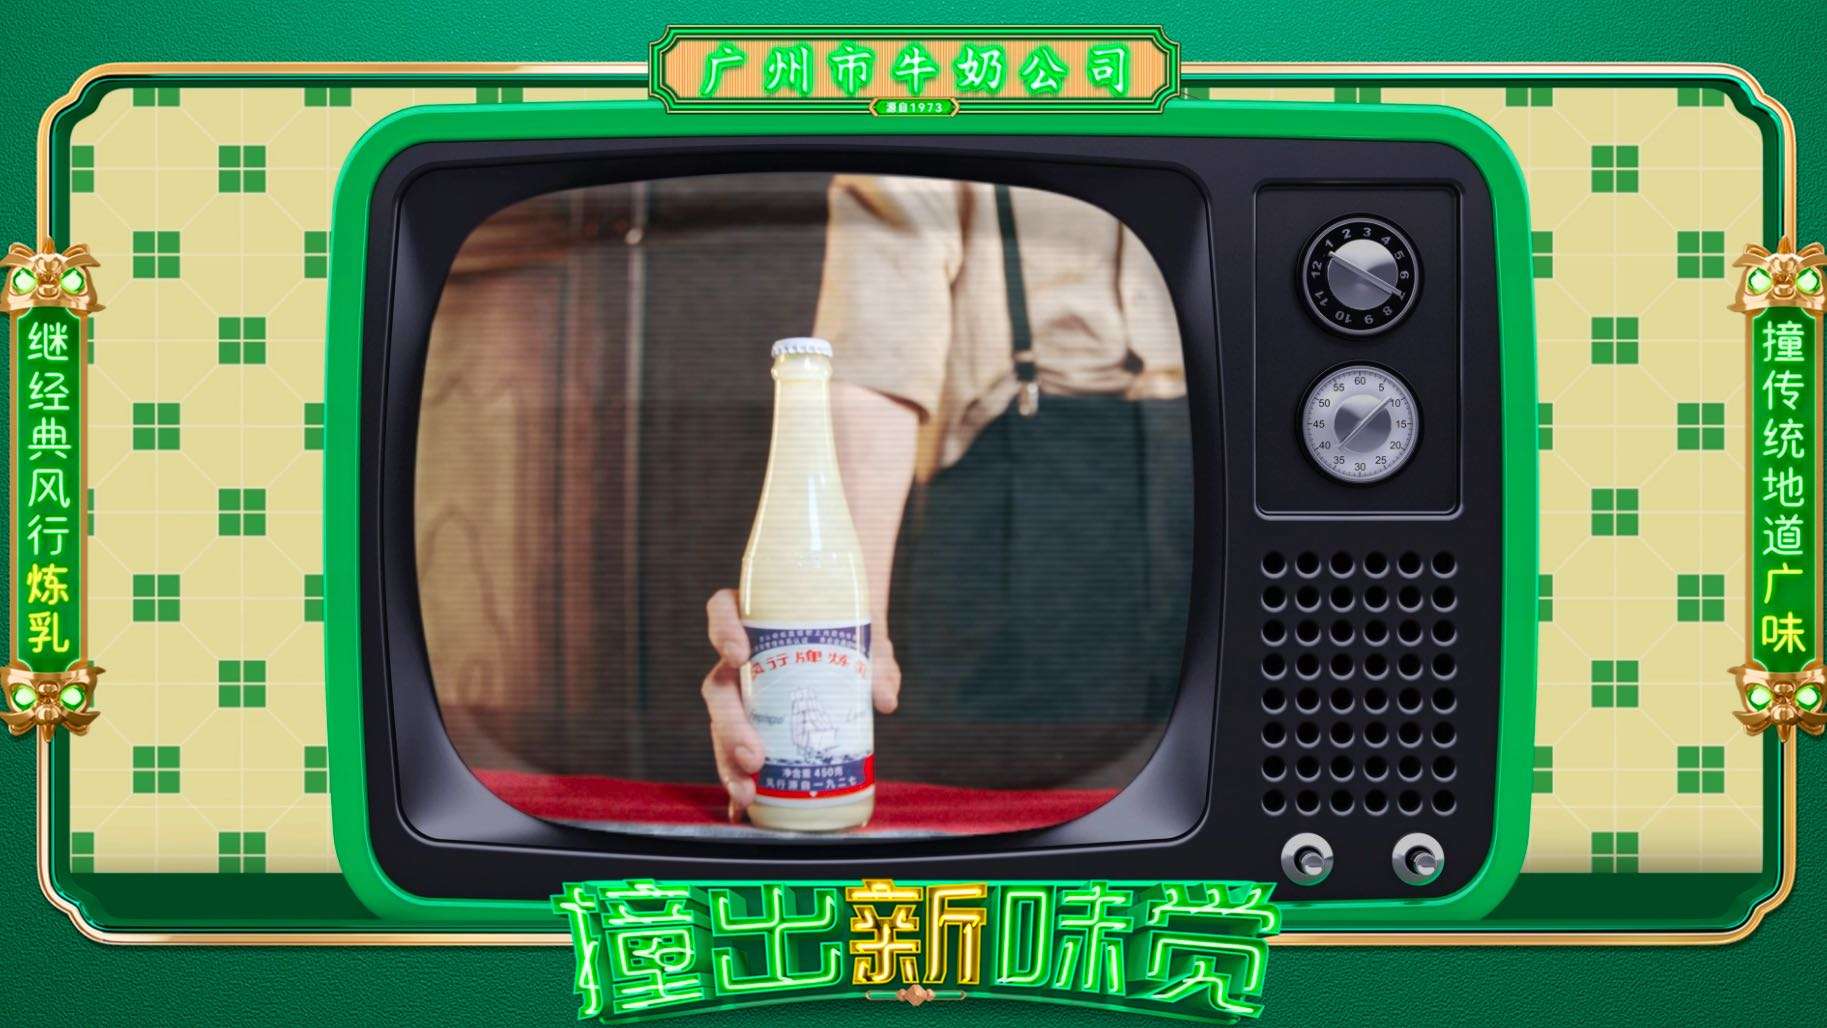 广州市牛奶公司「撞奶」-上市视频